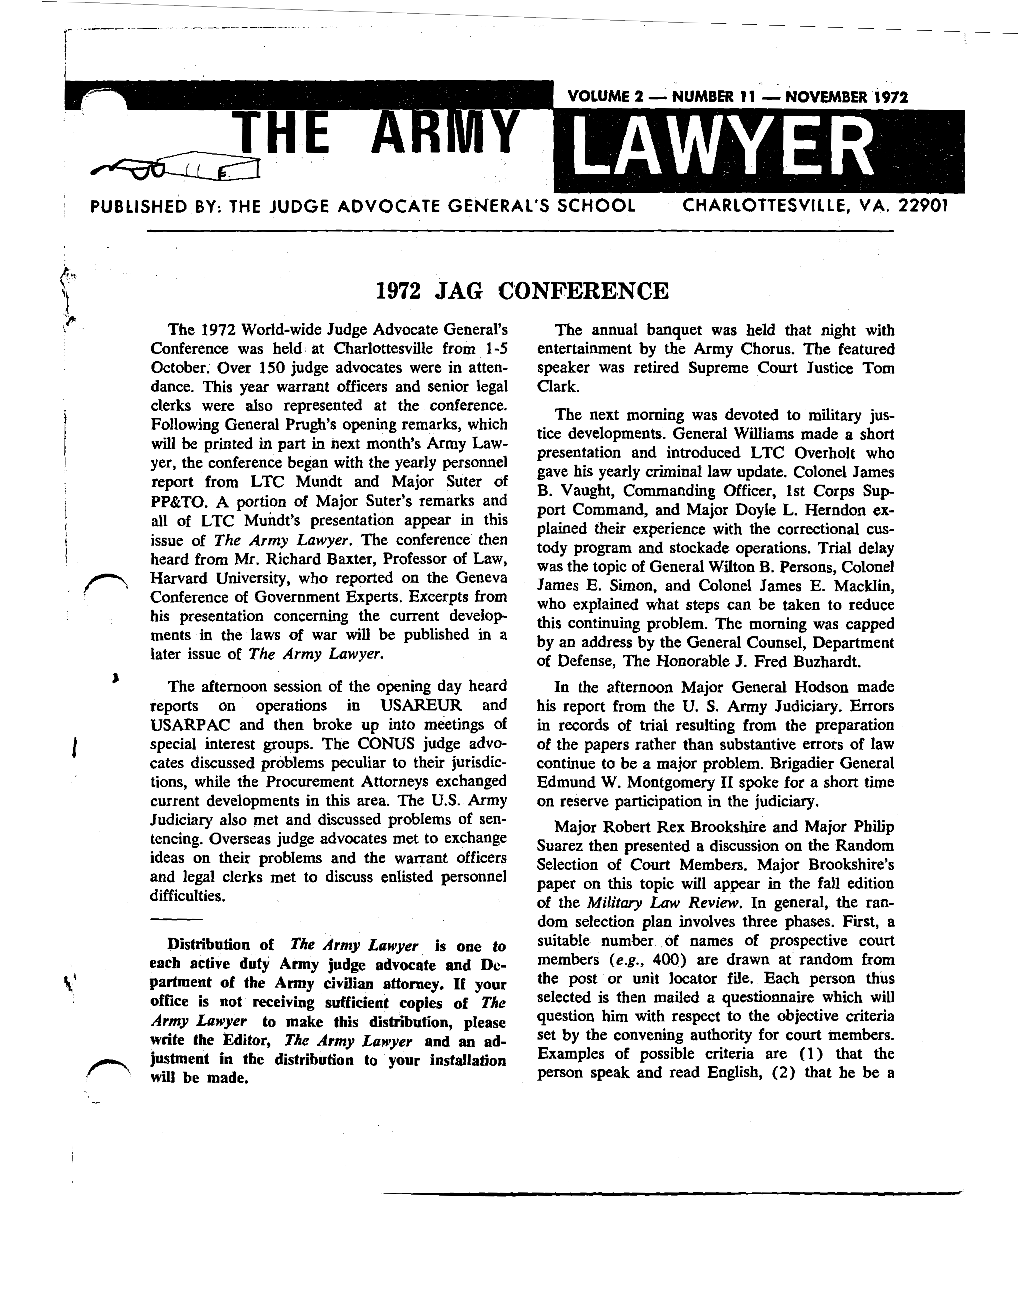 The Army Lawyer (Nov